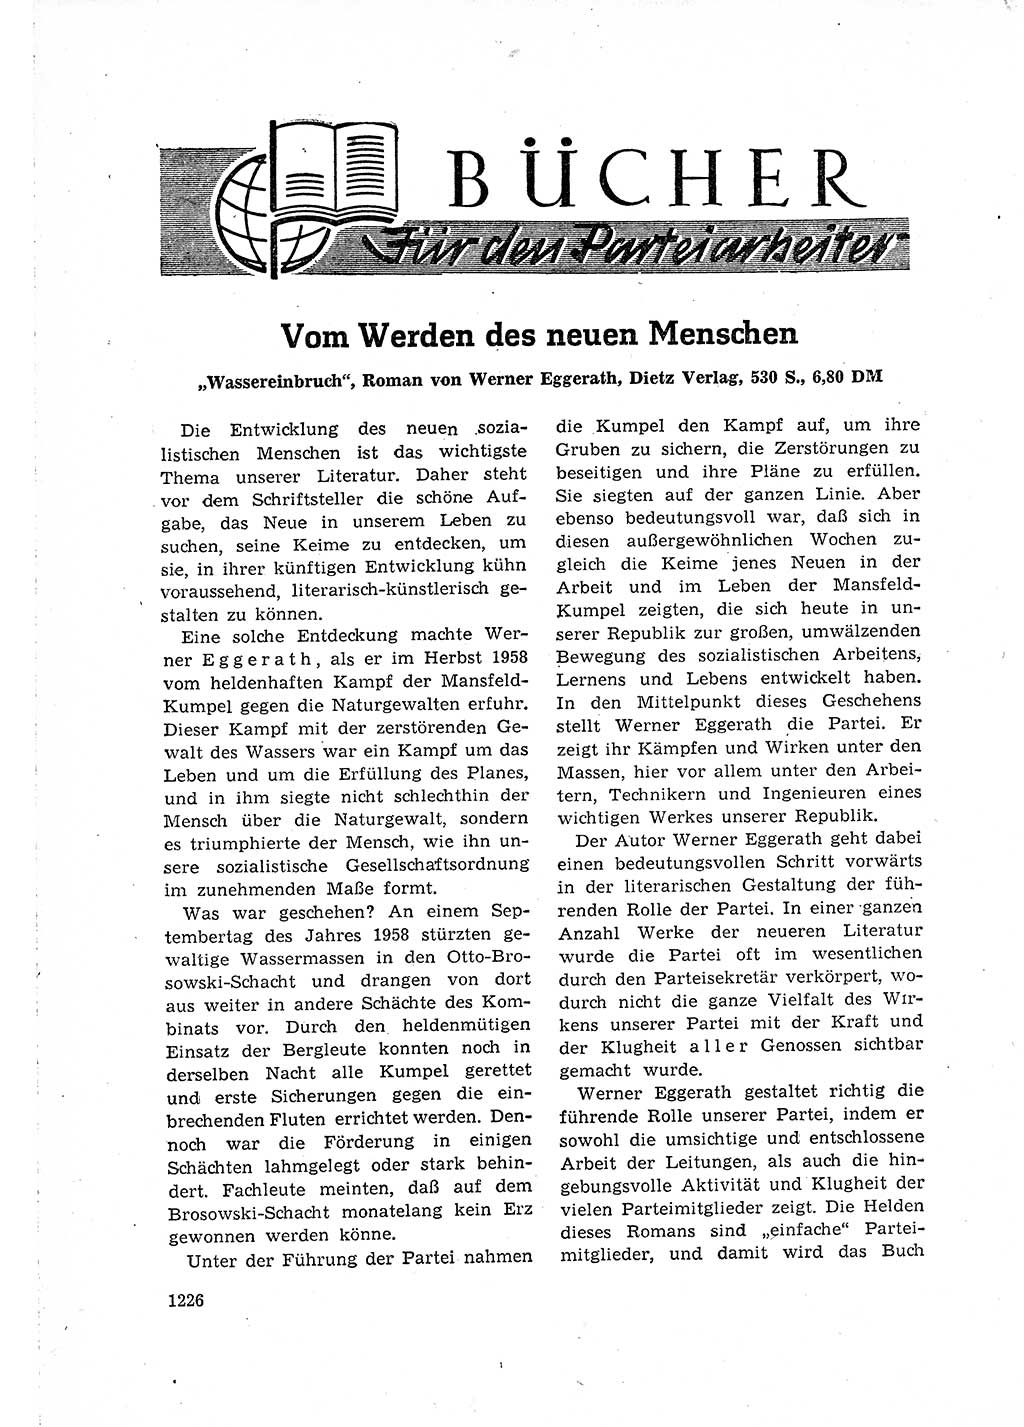 Neuer Weg (NW), Organ des Zentralkomitees (ZK) der SED (Sozialistische Einheitspartei Deutschlands) für Fragen des Parteilebens, 15. Jahrgang [Deutsche Demokratische Republik (DDR)] 1960, Seite 1226 (NW ZK SED DDR 1960, S. 1226)